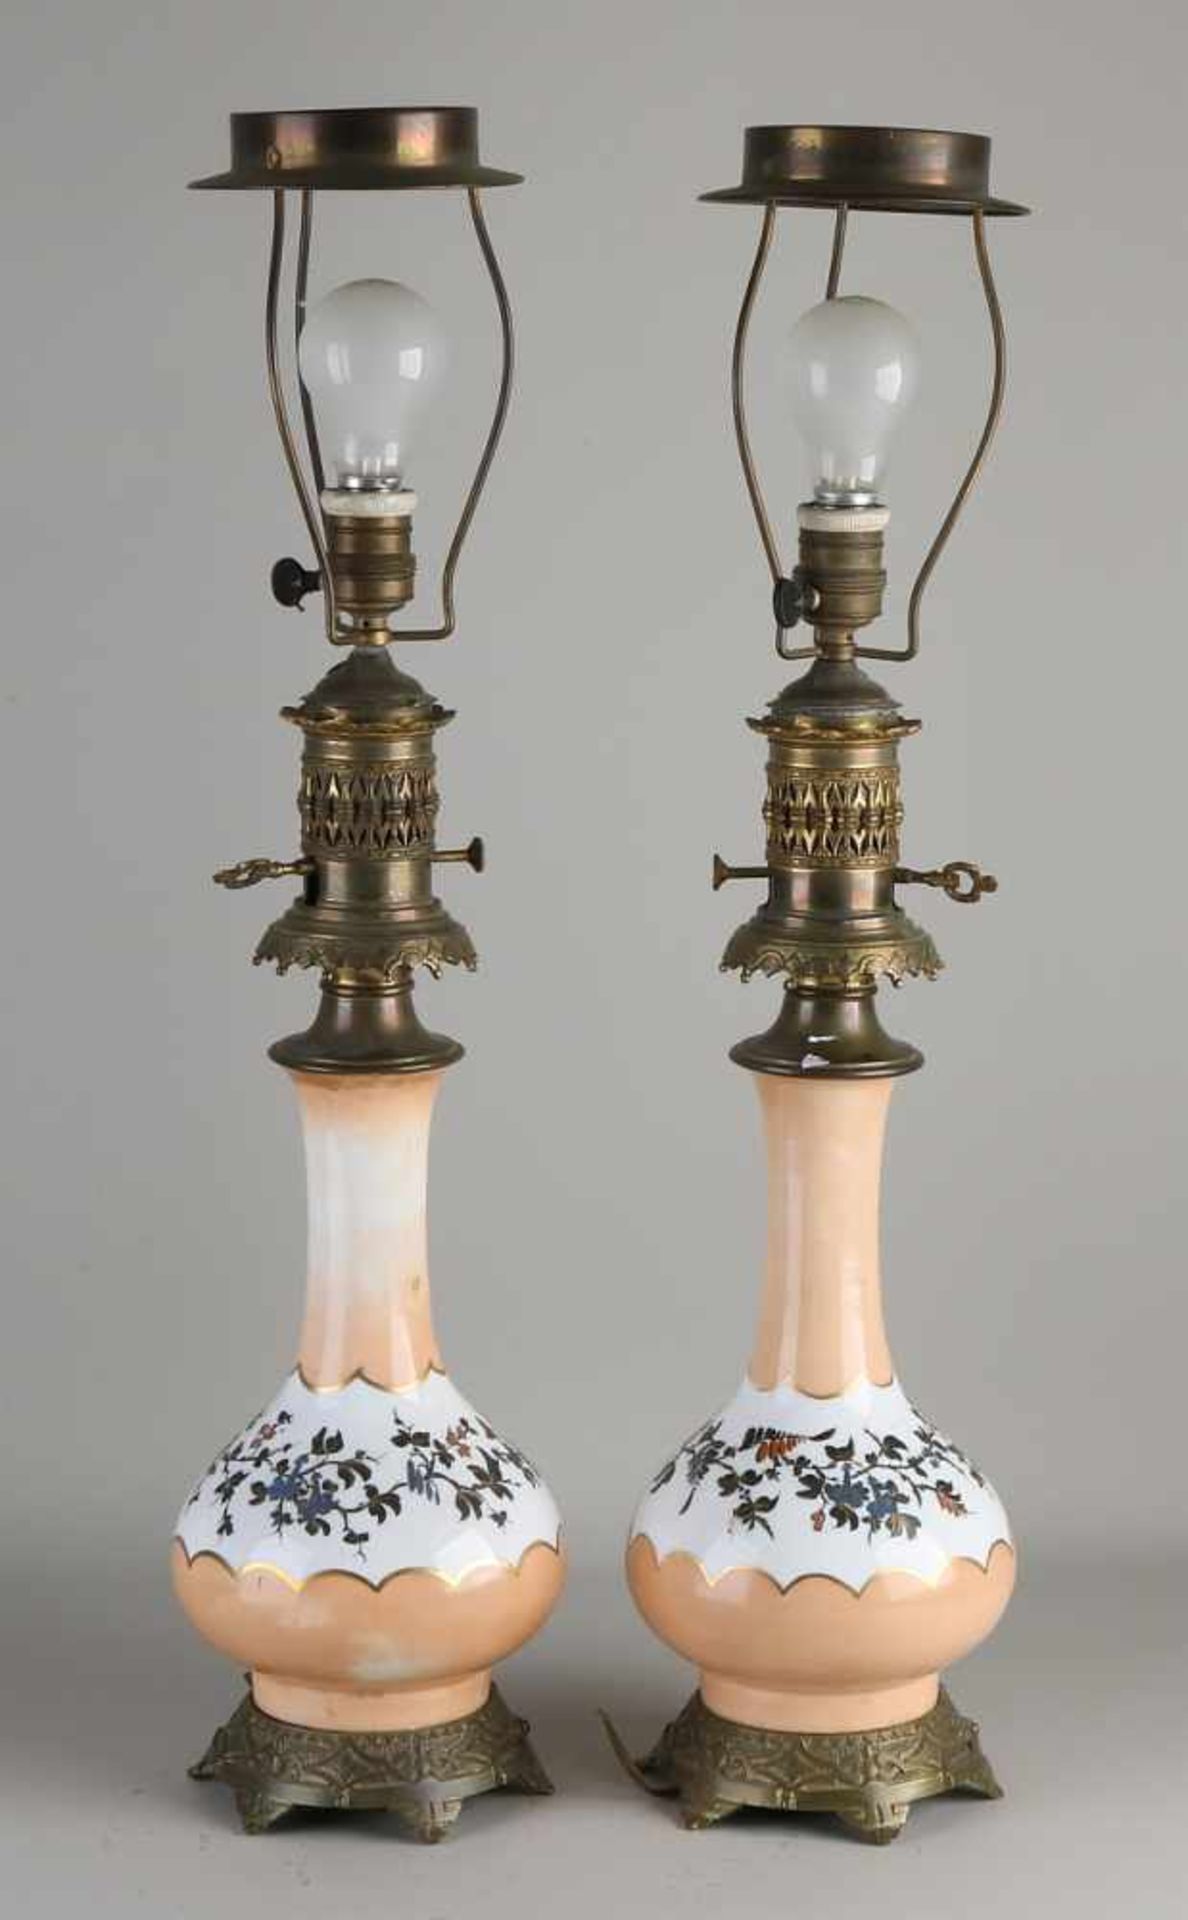 Zwei antike Porzellantischlampen. Elektrifizierte Petroleumlampen mit Messing- und Blumenbemalung.